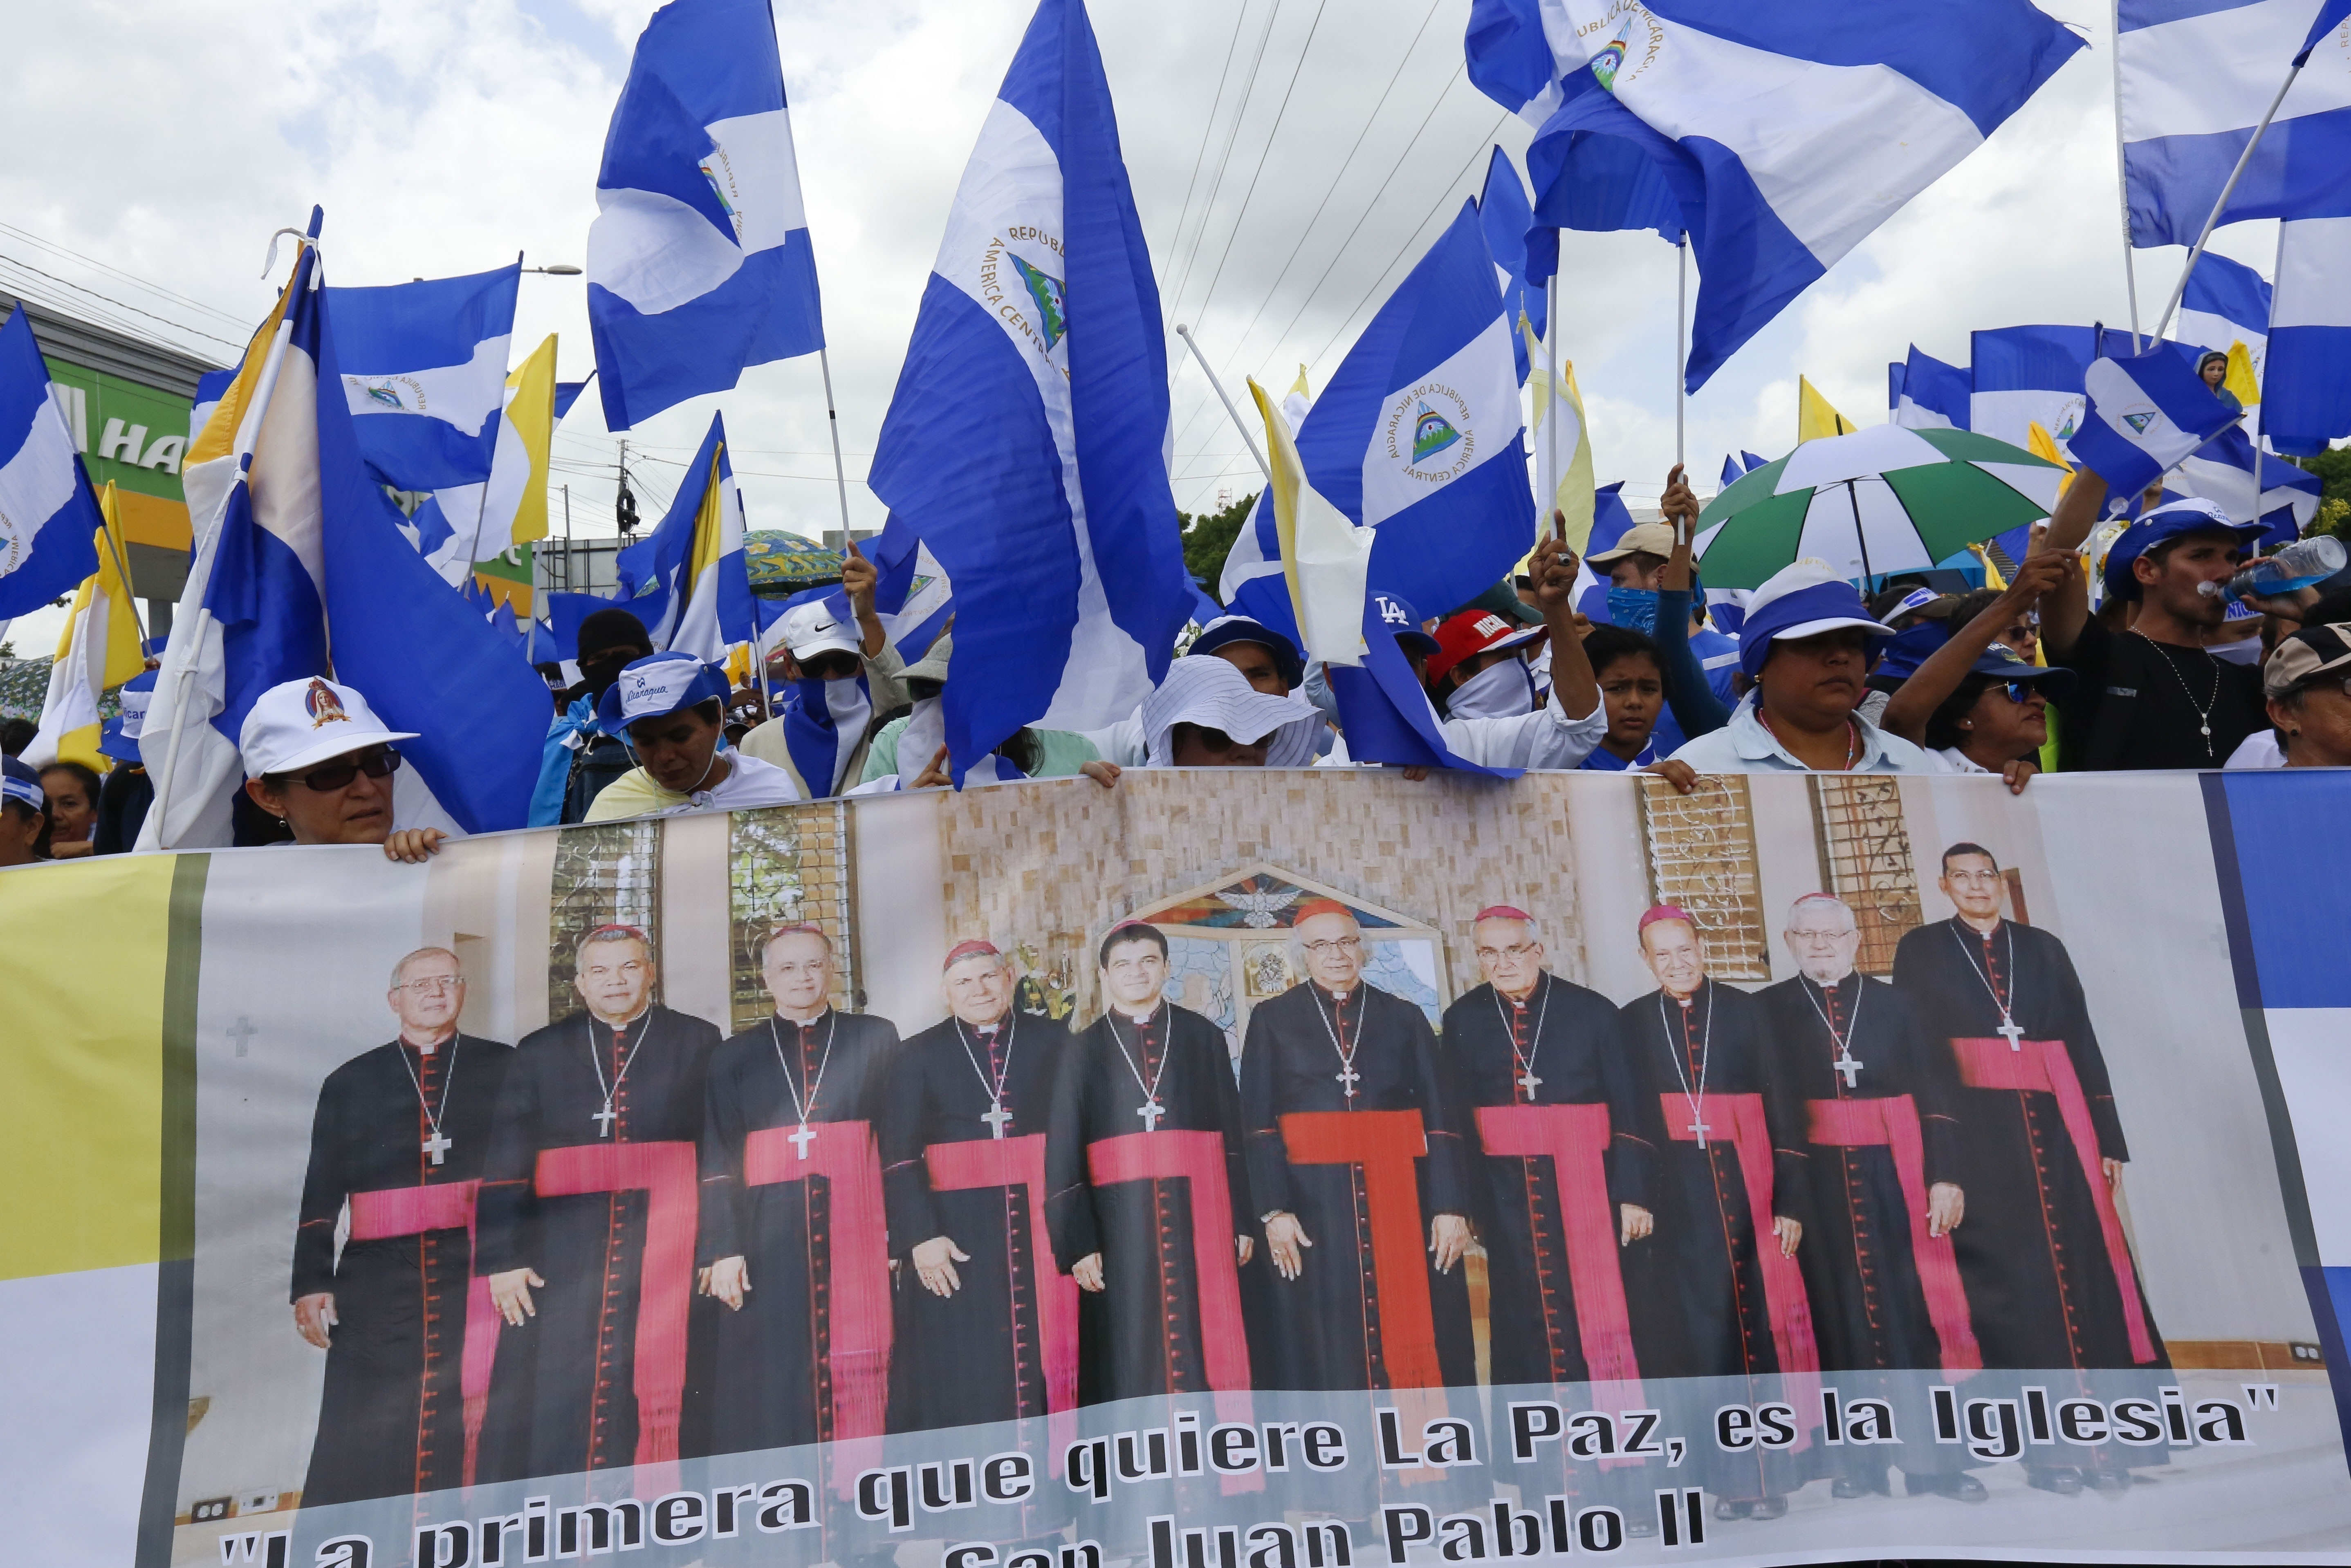 Persecución contra la Iglesia en Nicaragua: ya son 77 los religiosos que dejaron el país por el régimen de Ortega